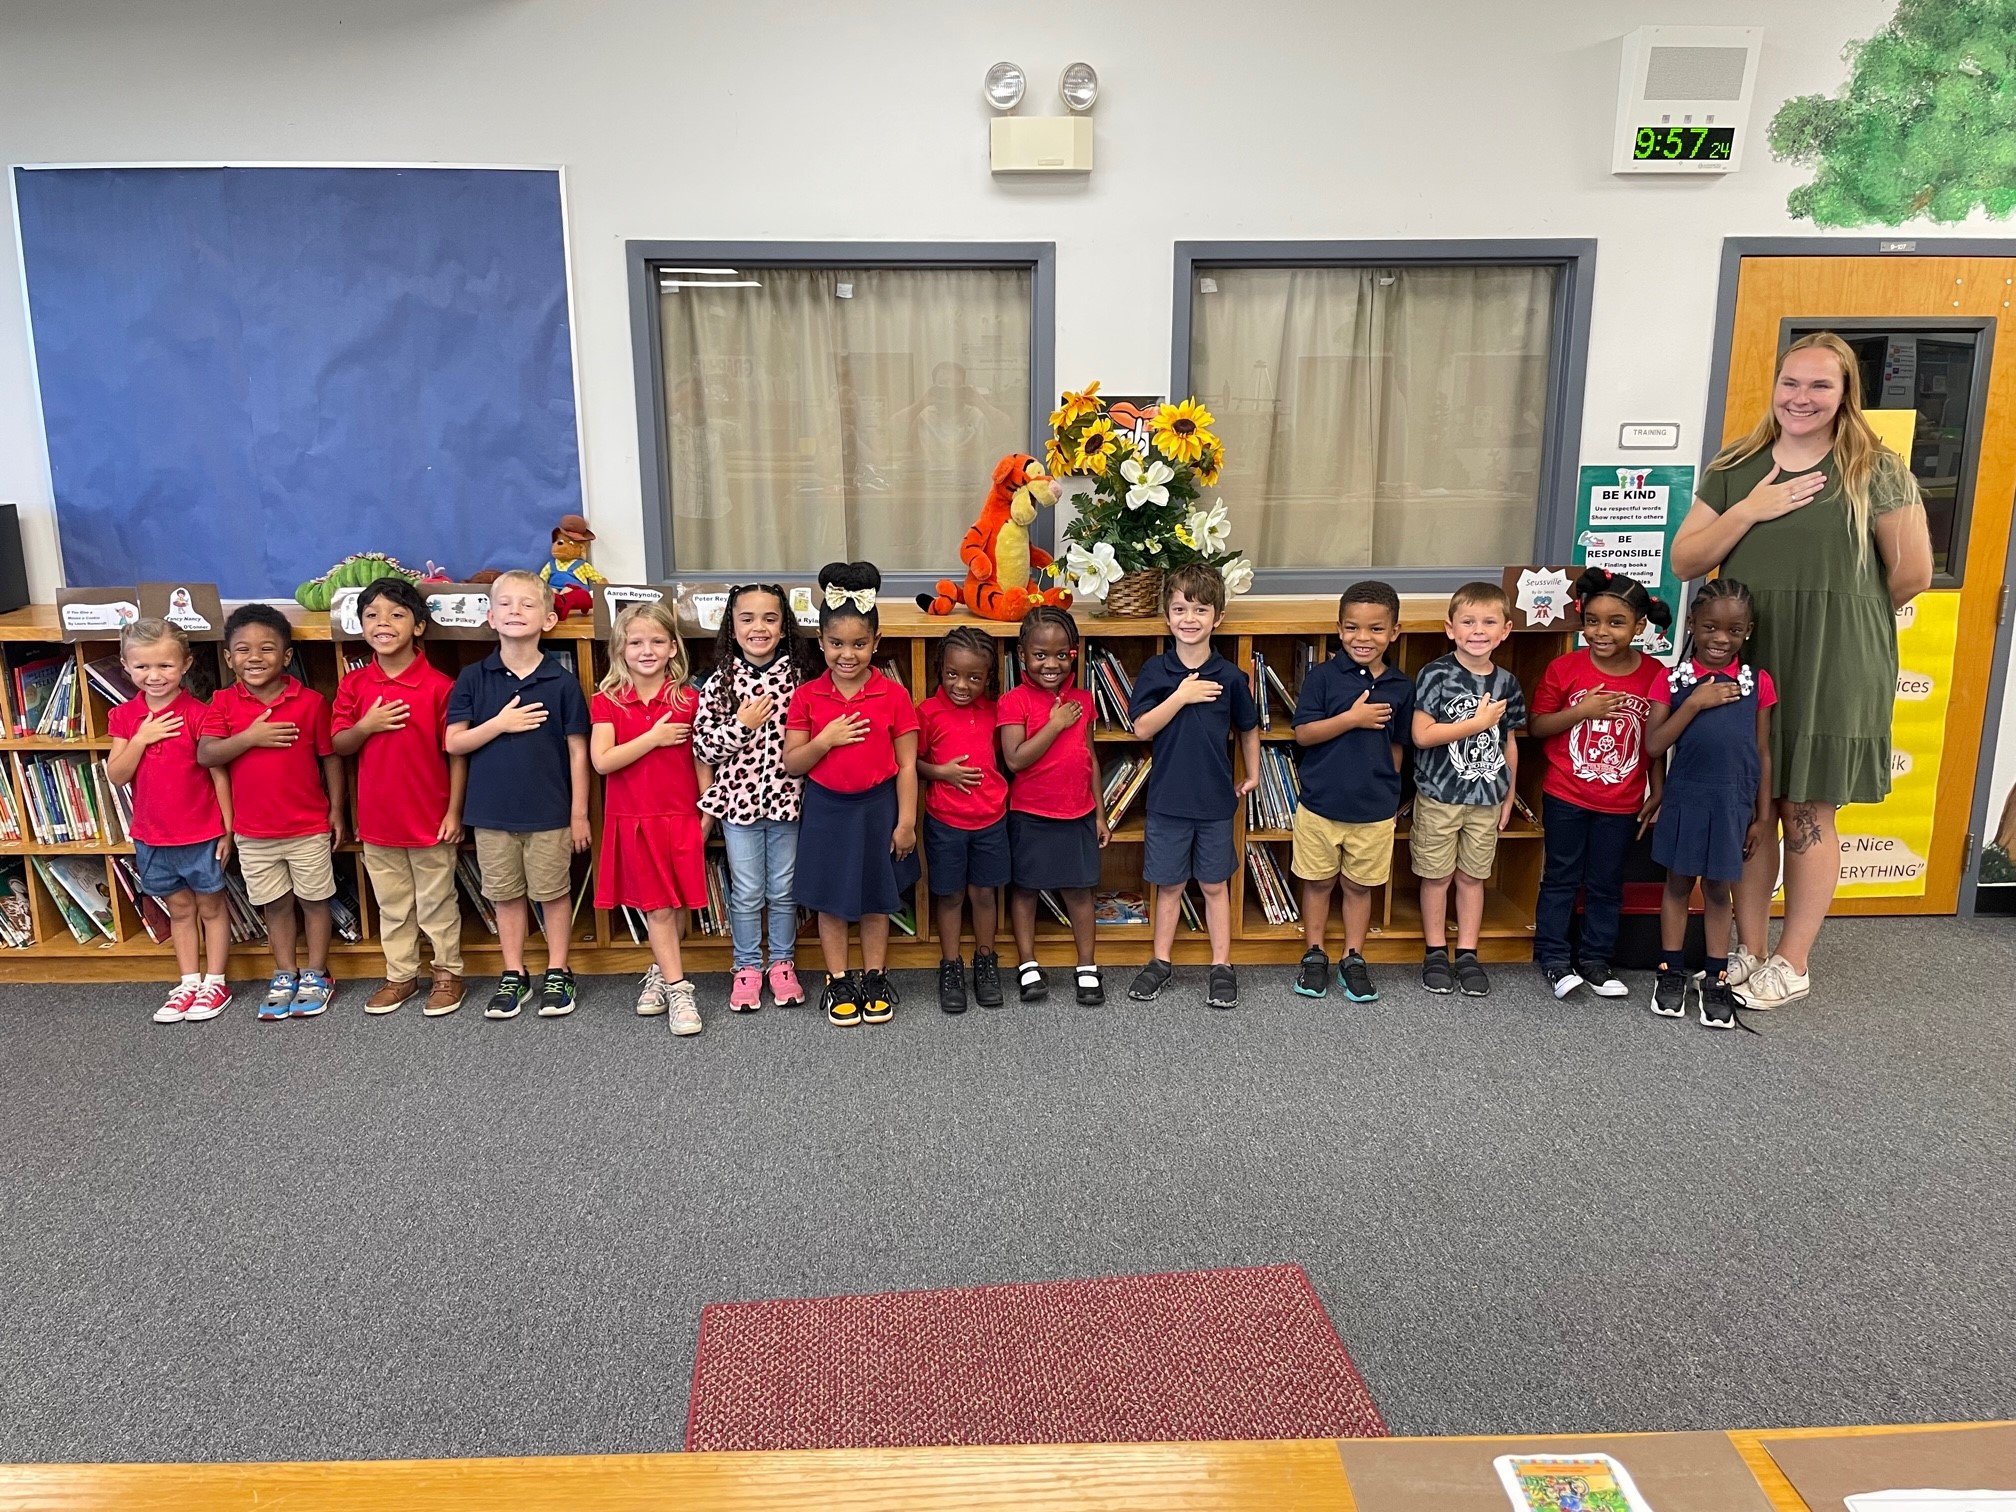 Class Of The Day – Ms. Murphy’s Kindergarten Class